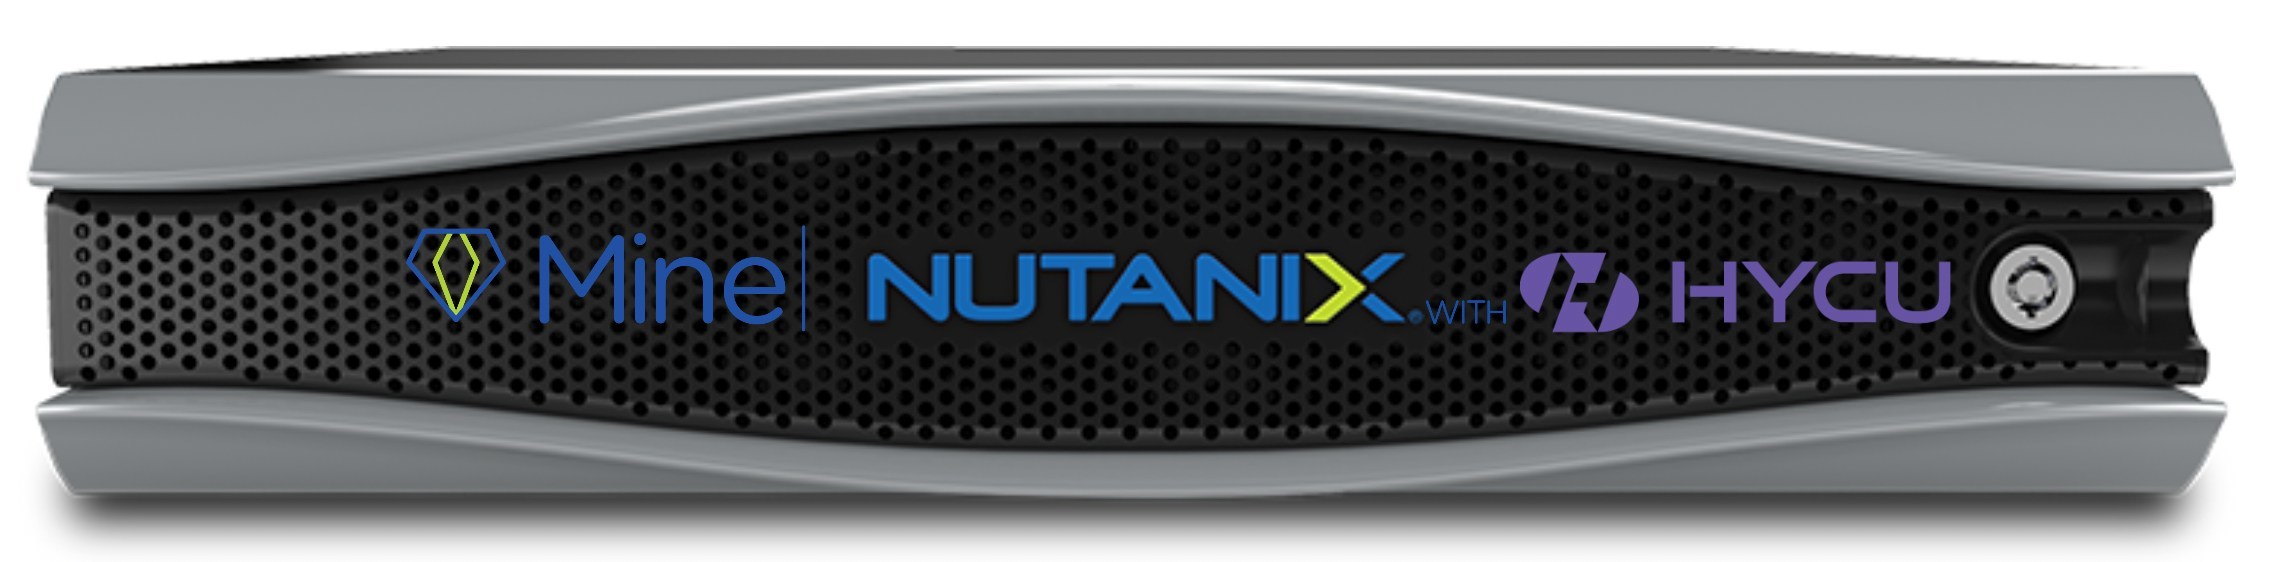 Nutanix Mine with HYCU To Simplify Secondary Storage and Make ...